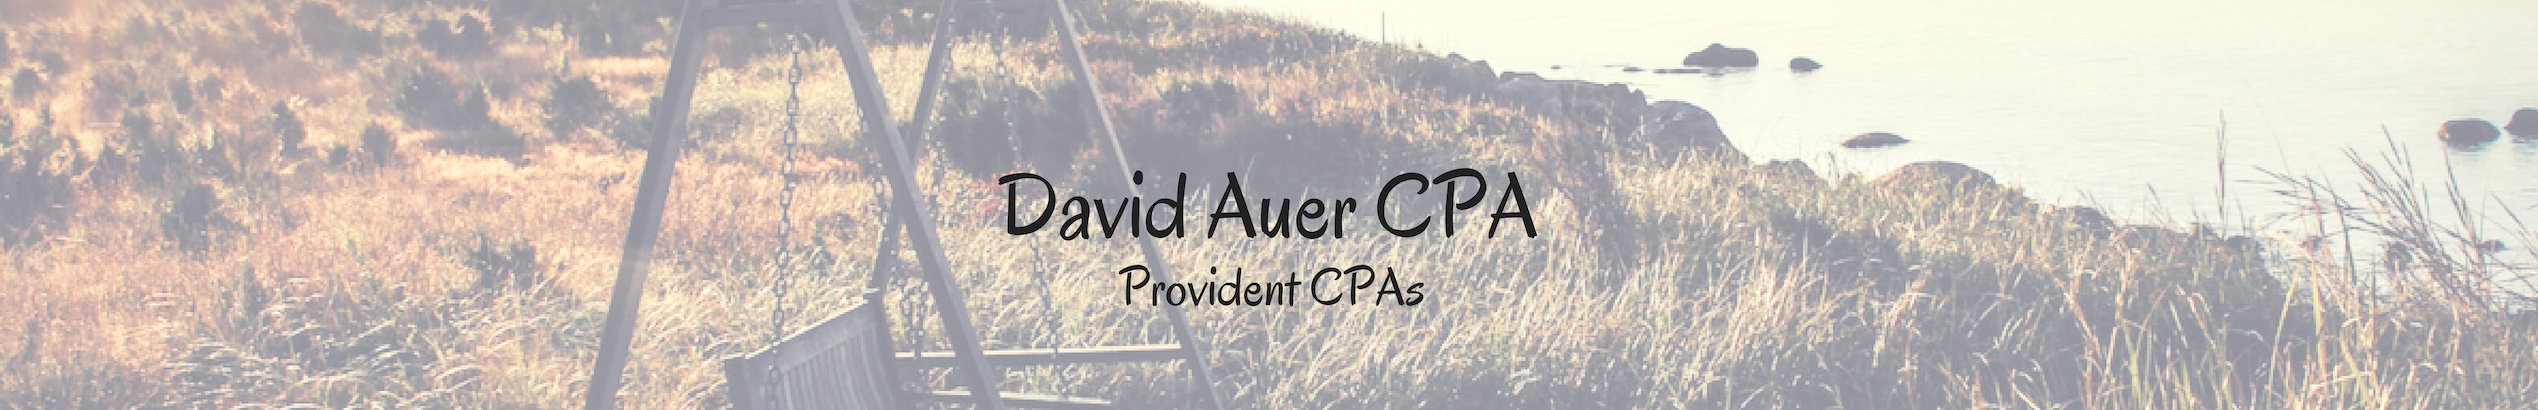 David Auer CPA's profile banner